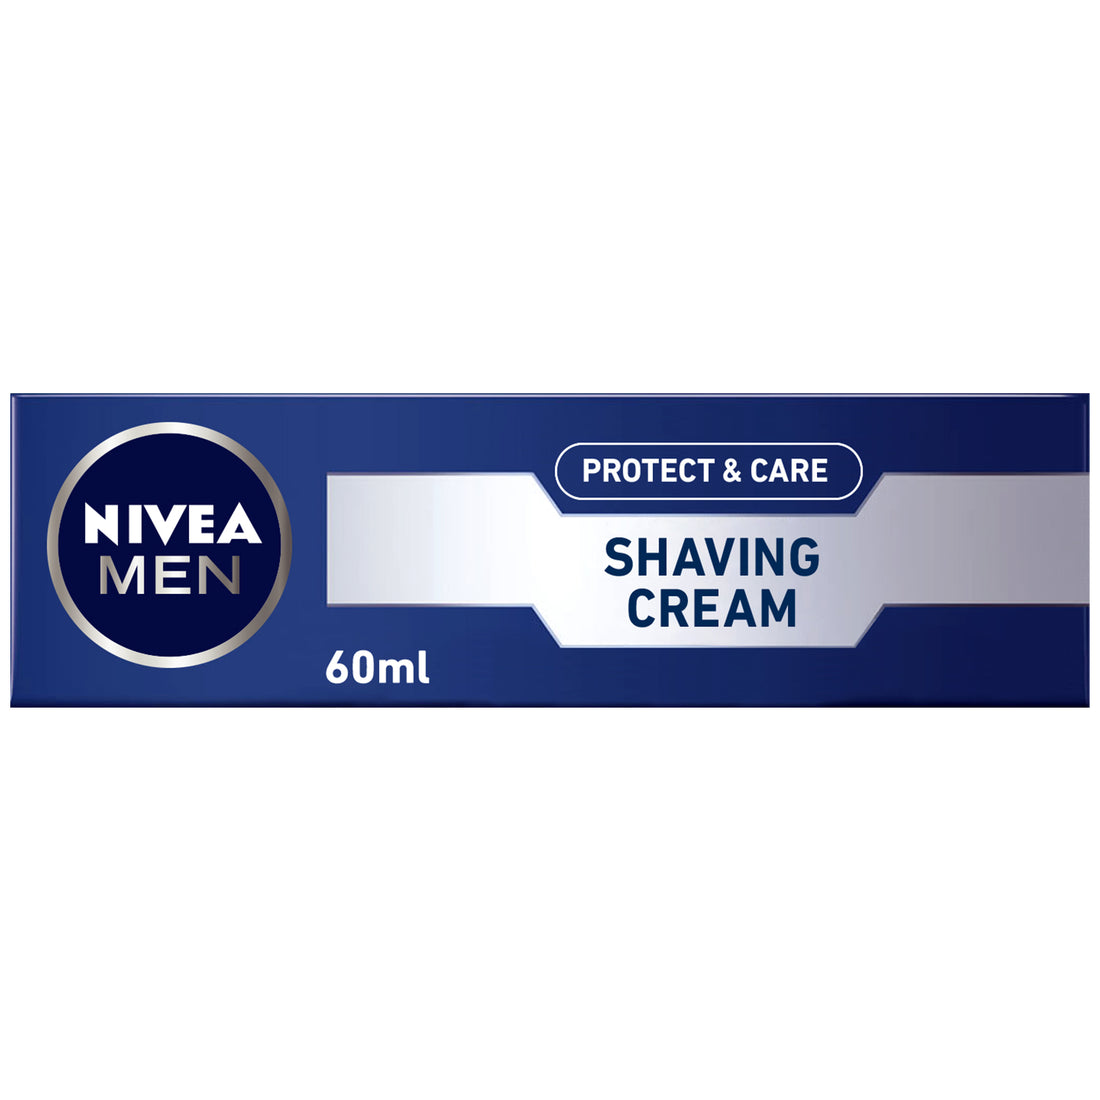 NIVEA MEN Protect &amp; Care Shaving Cream, Aloe Vera, 60ml